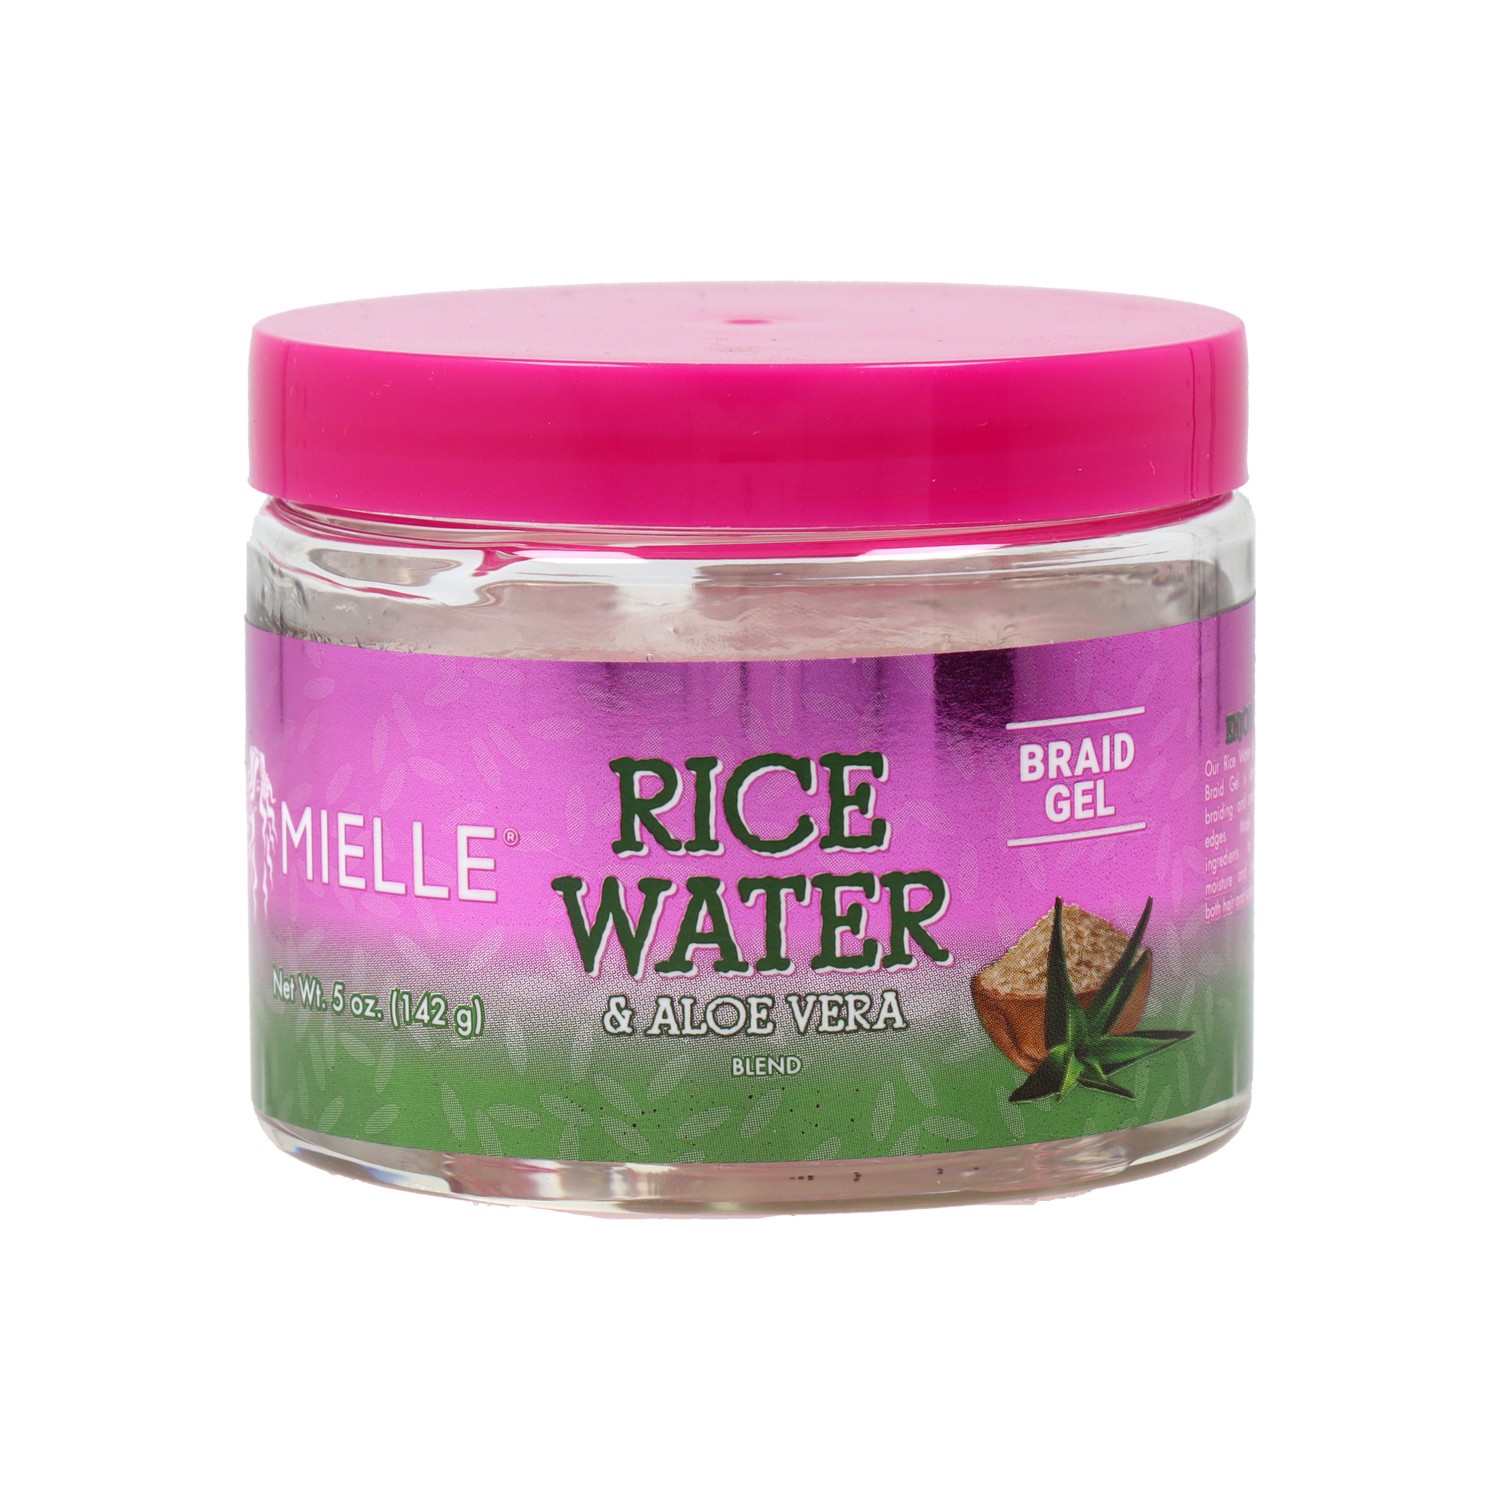 Mielle Rice Water Aloe Vera Braid Gel 142ml